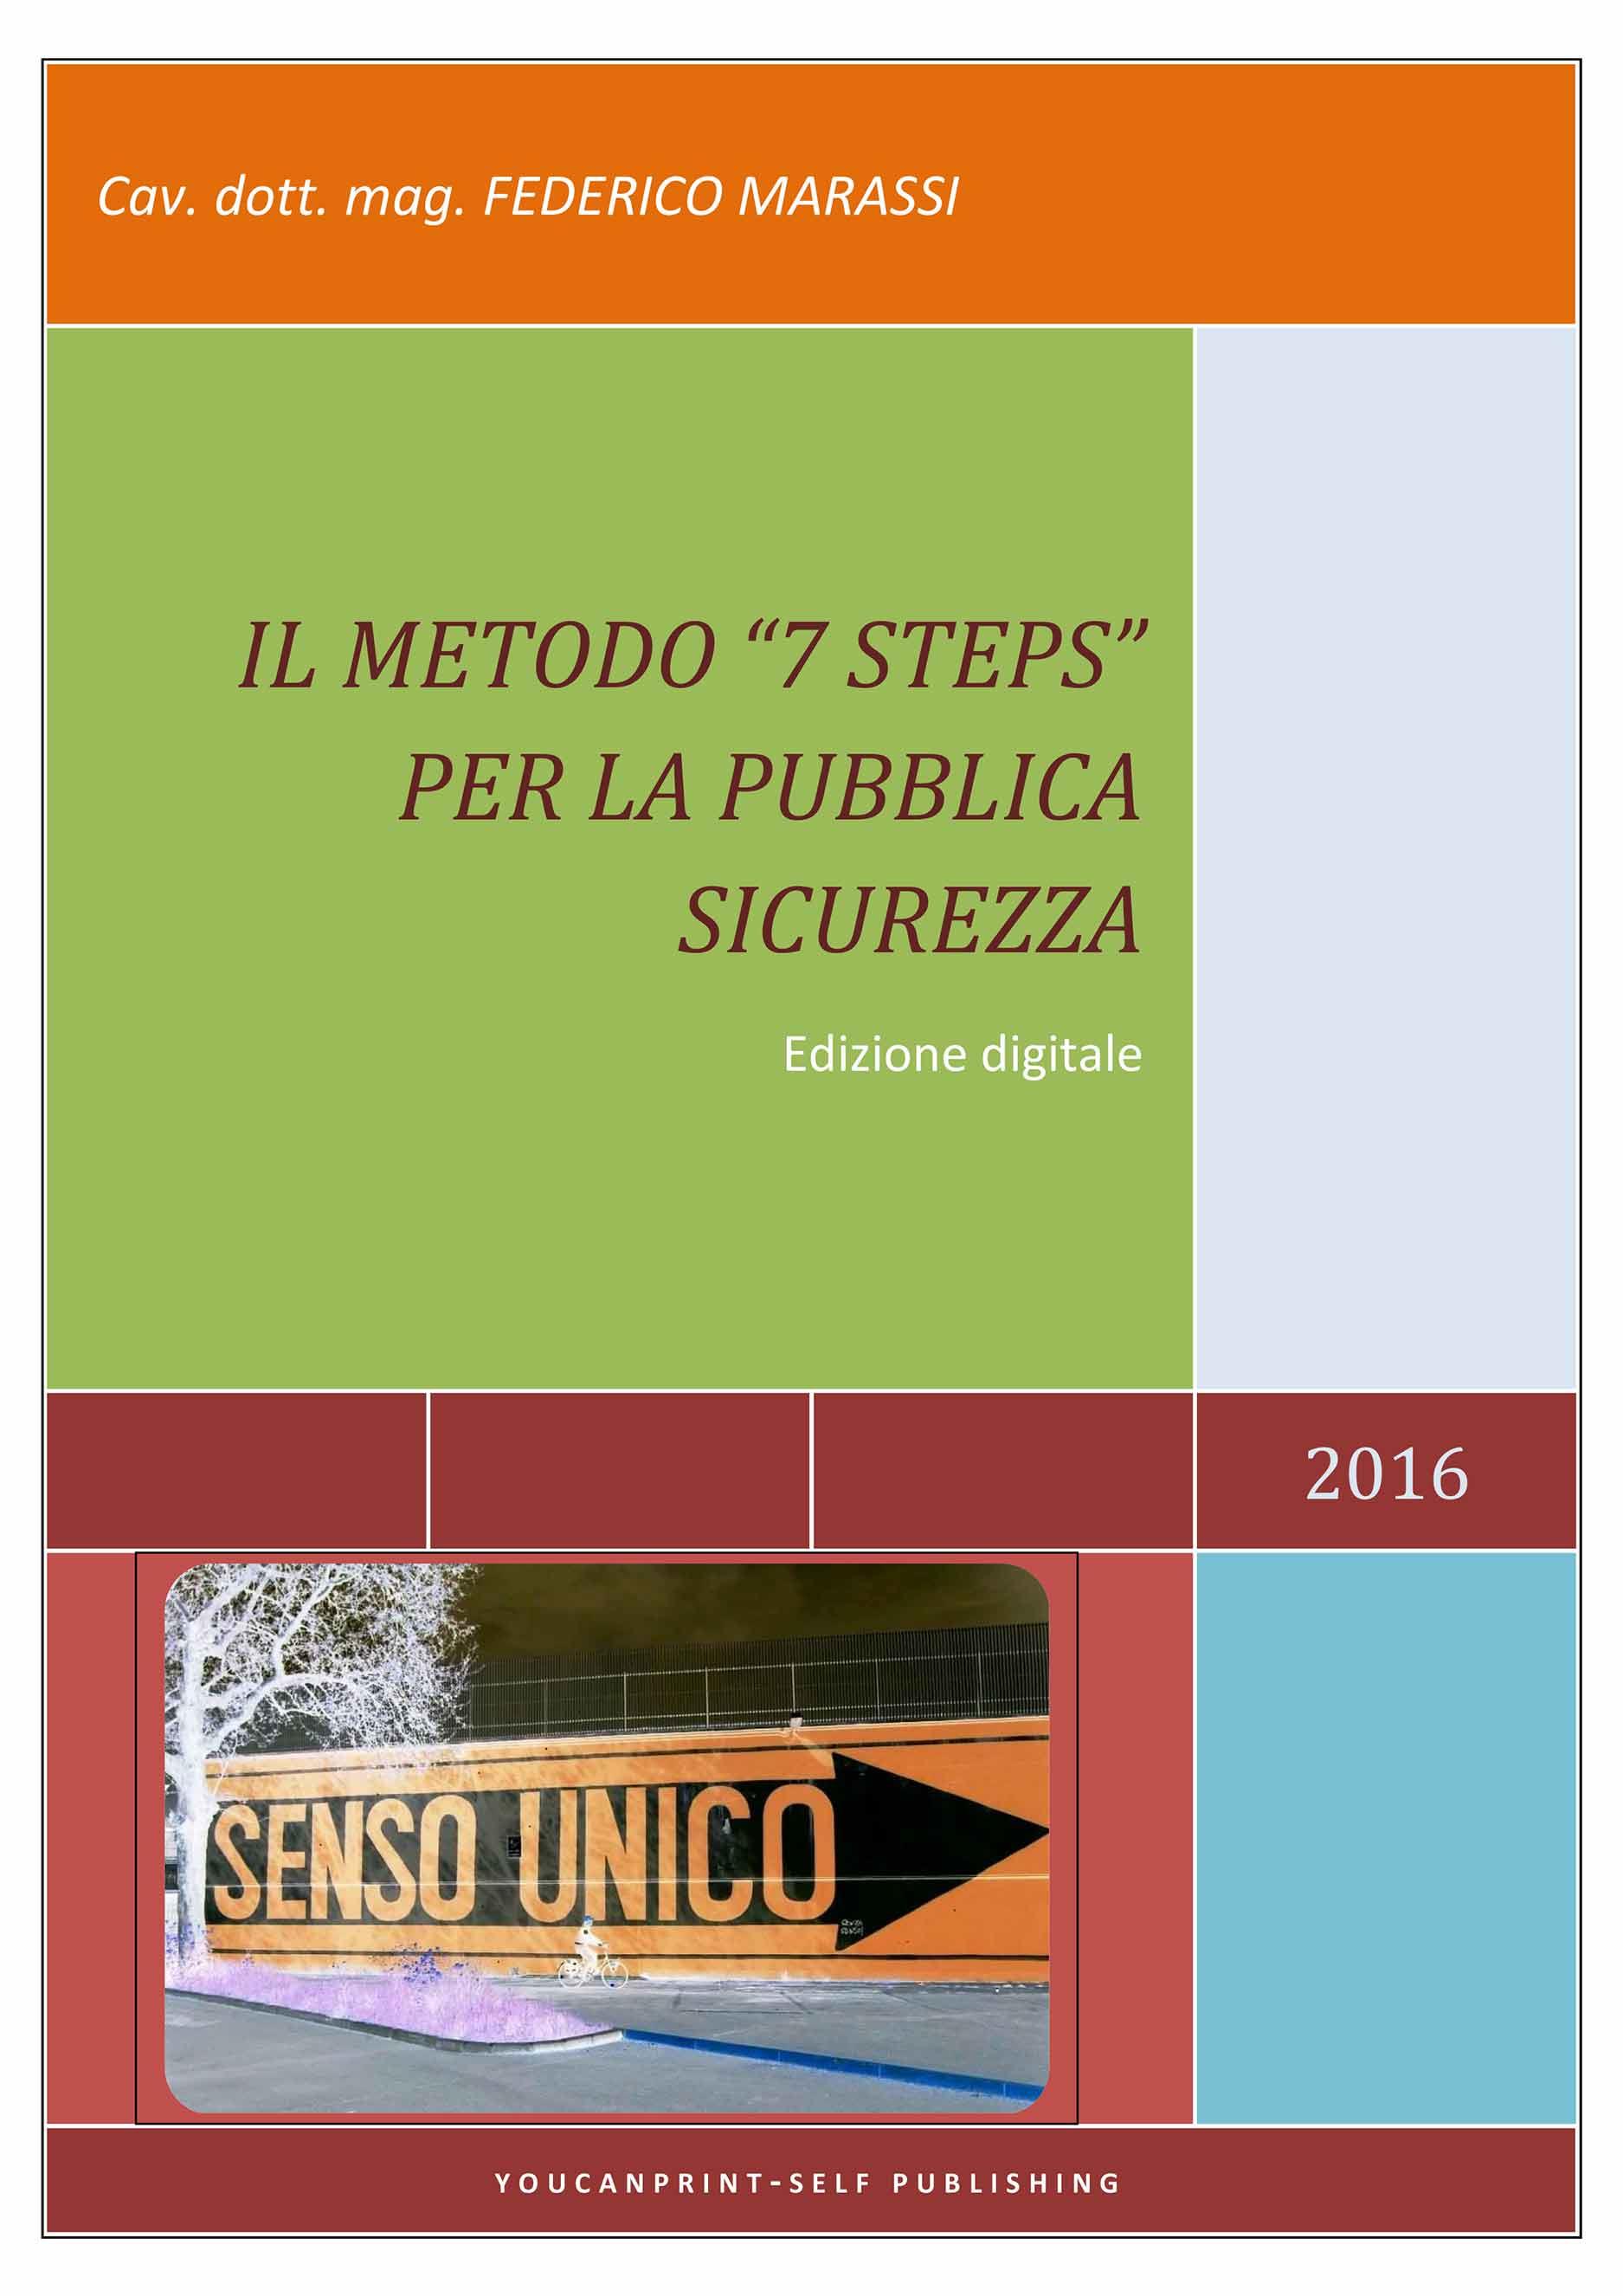 Il metodo "7 Steps" per la pubblica sicurezza